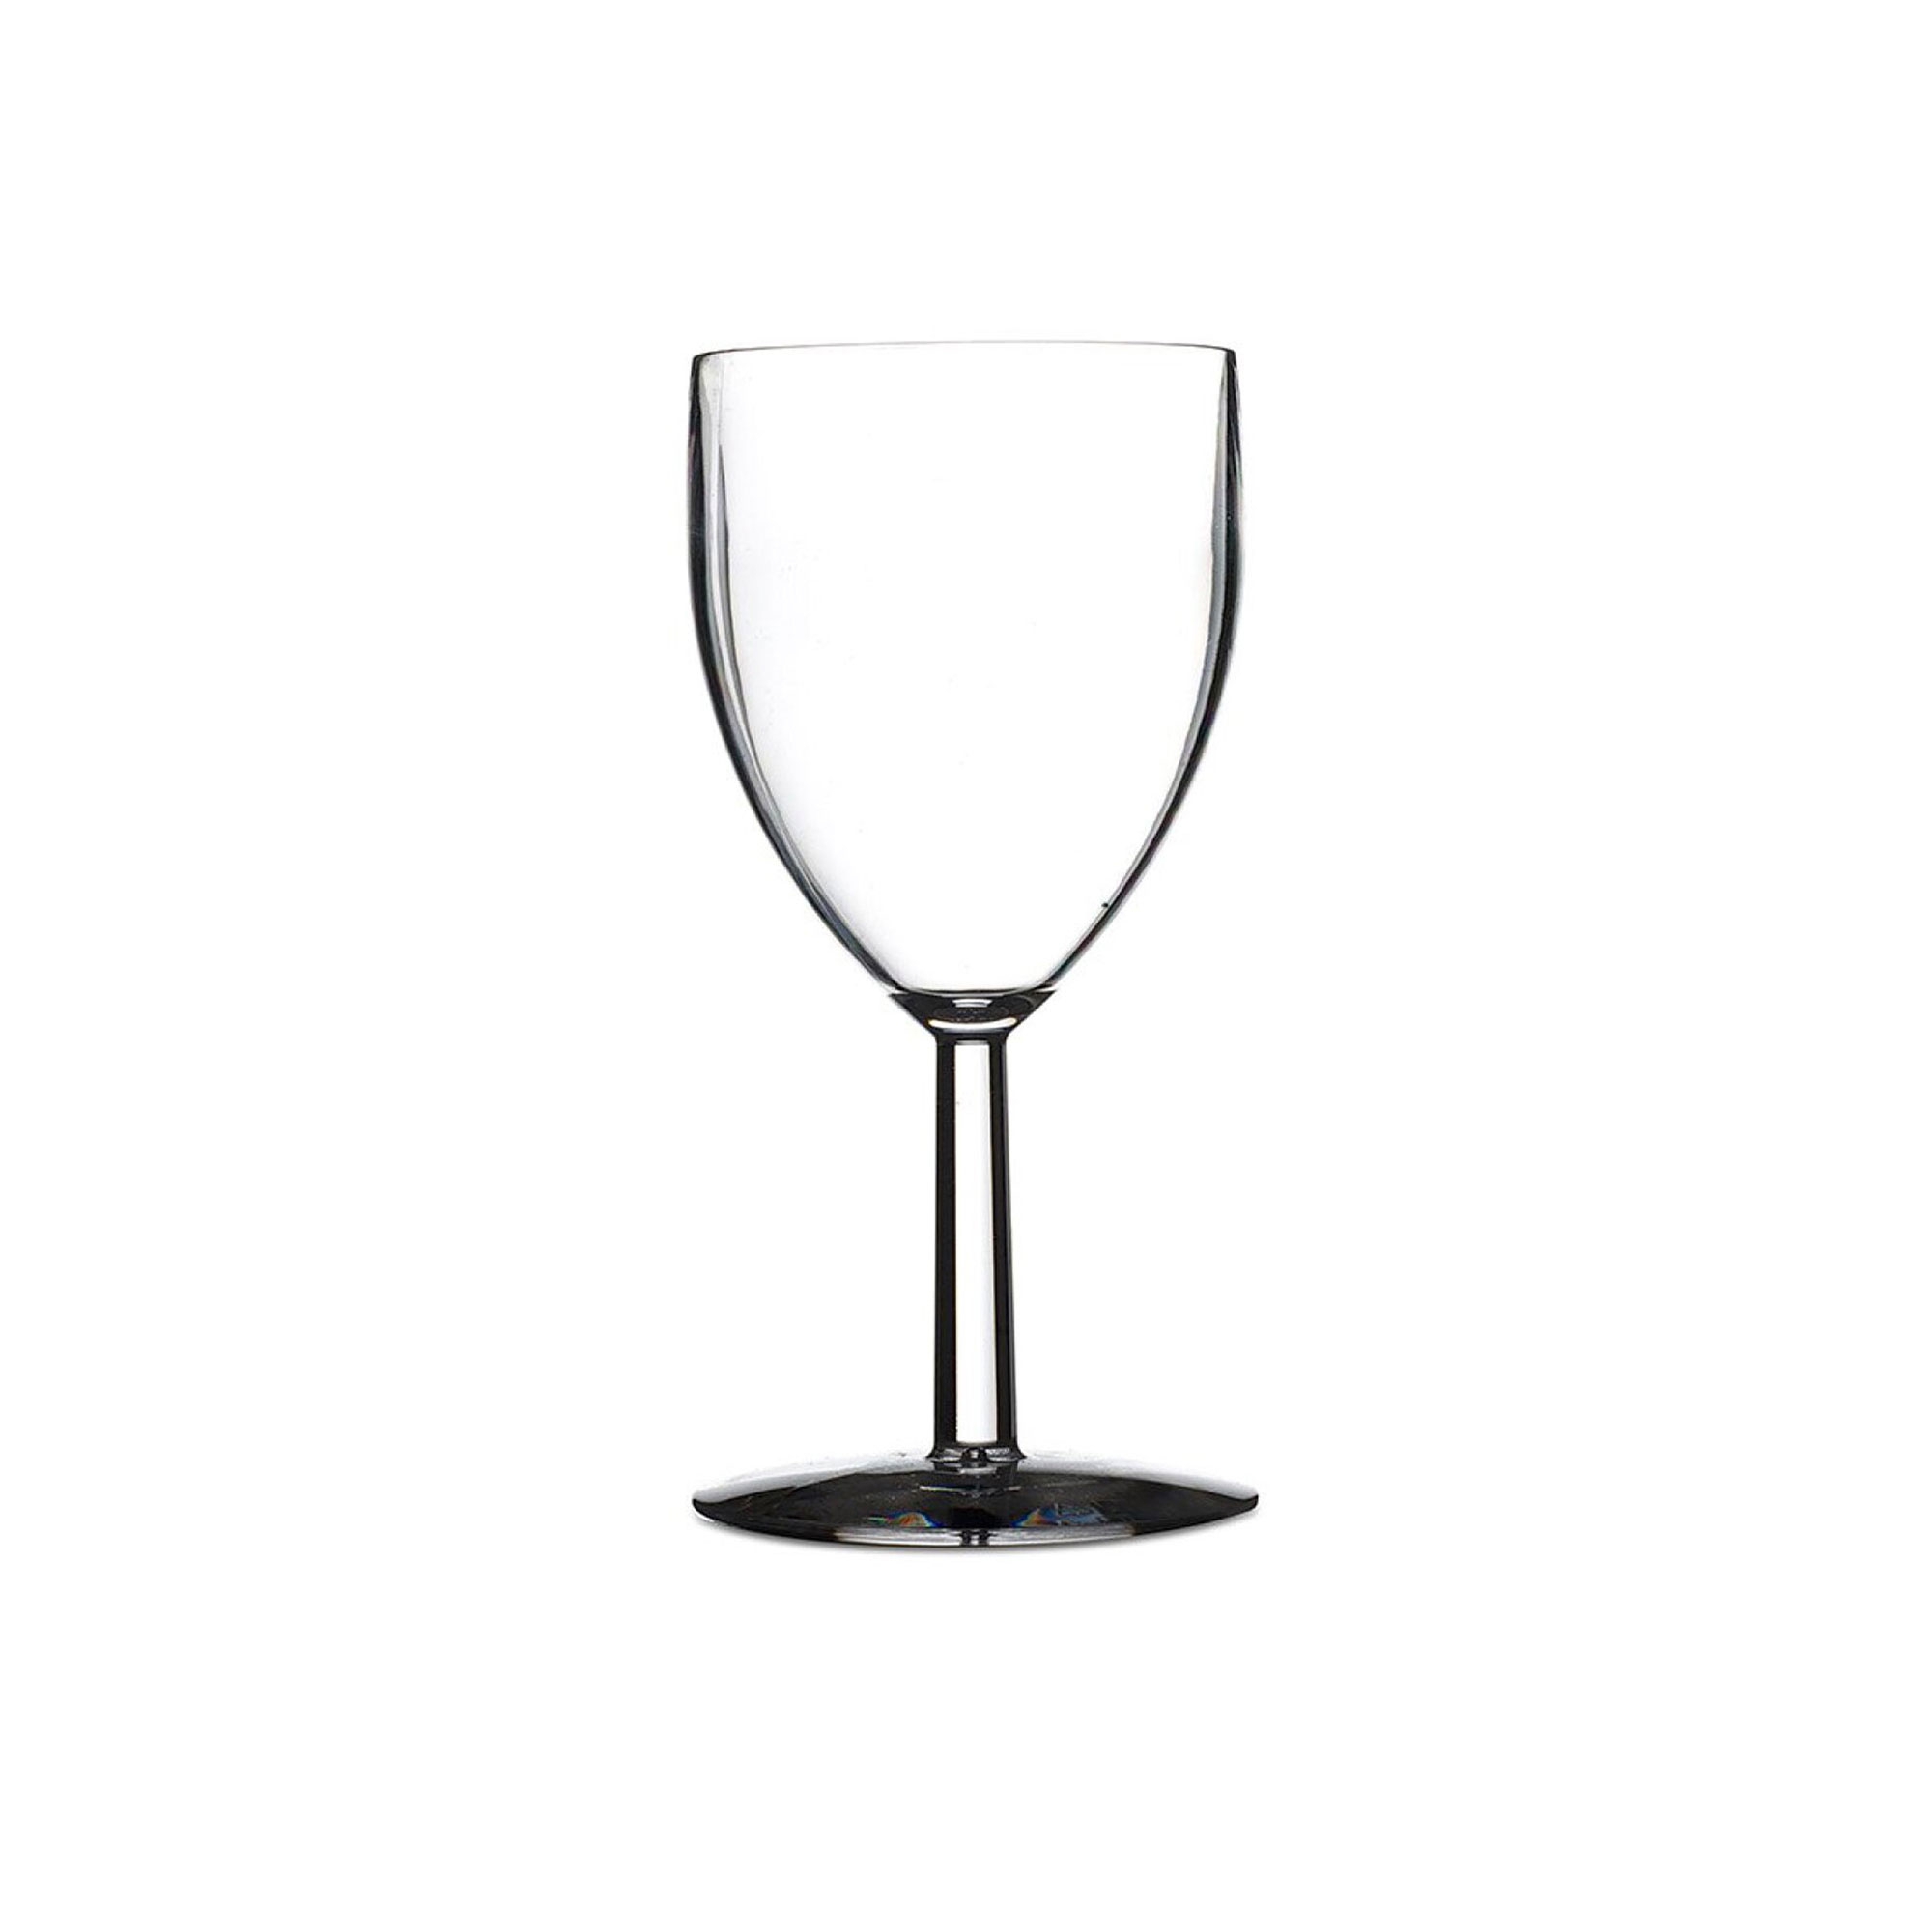 Mepal - Kunststoffglas Wein 200 ml - 2er Set